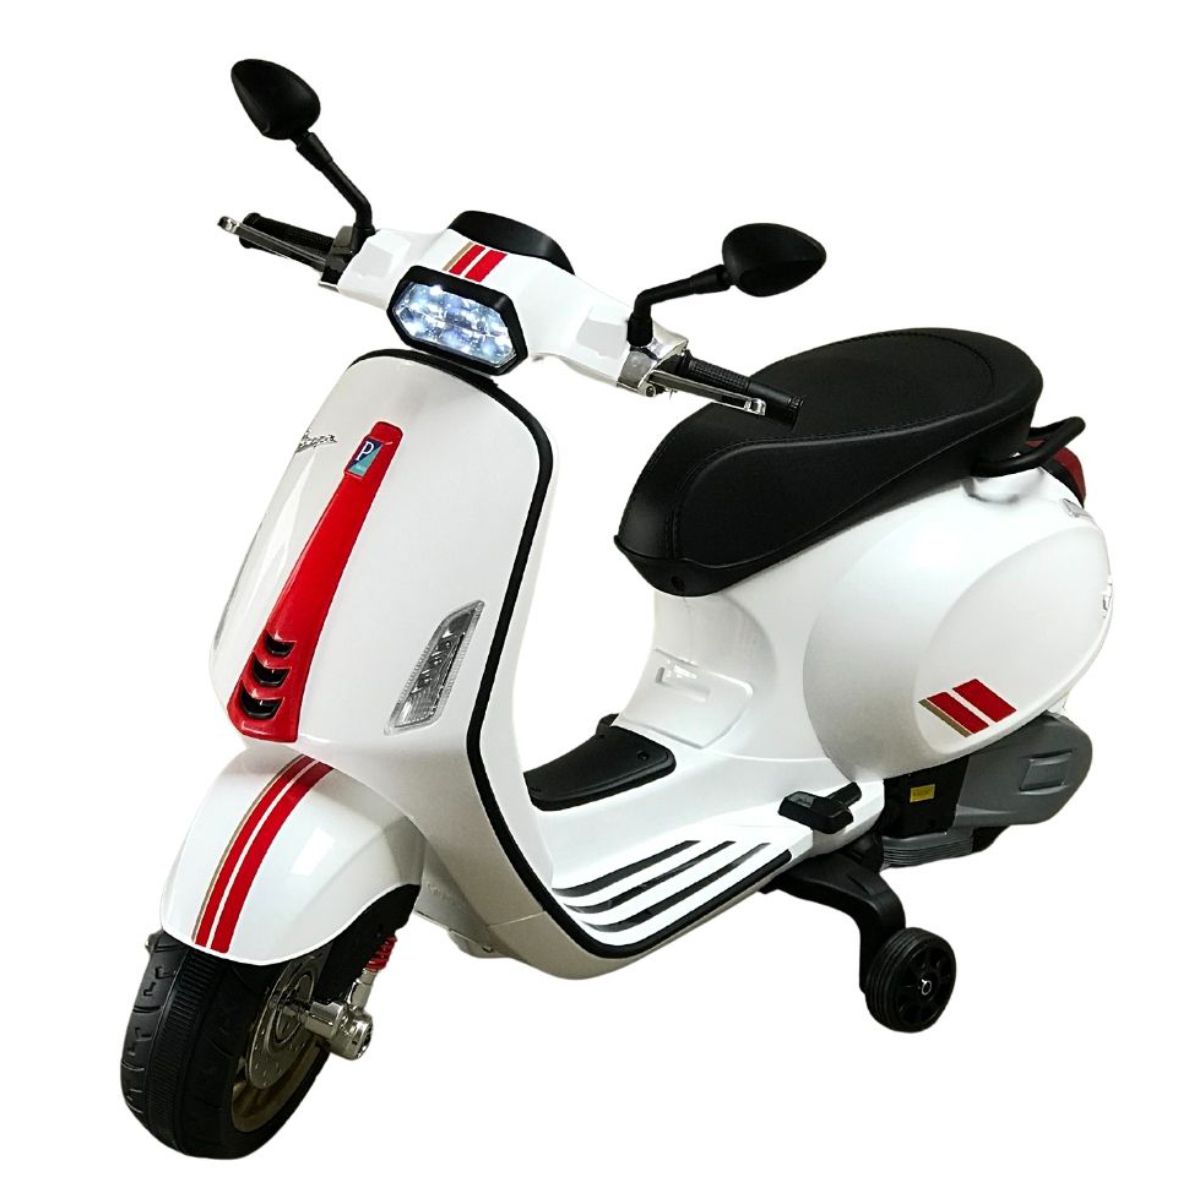 Moto 3 rodas eletrica para crianças 6v - 2 cores